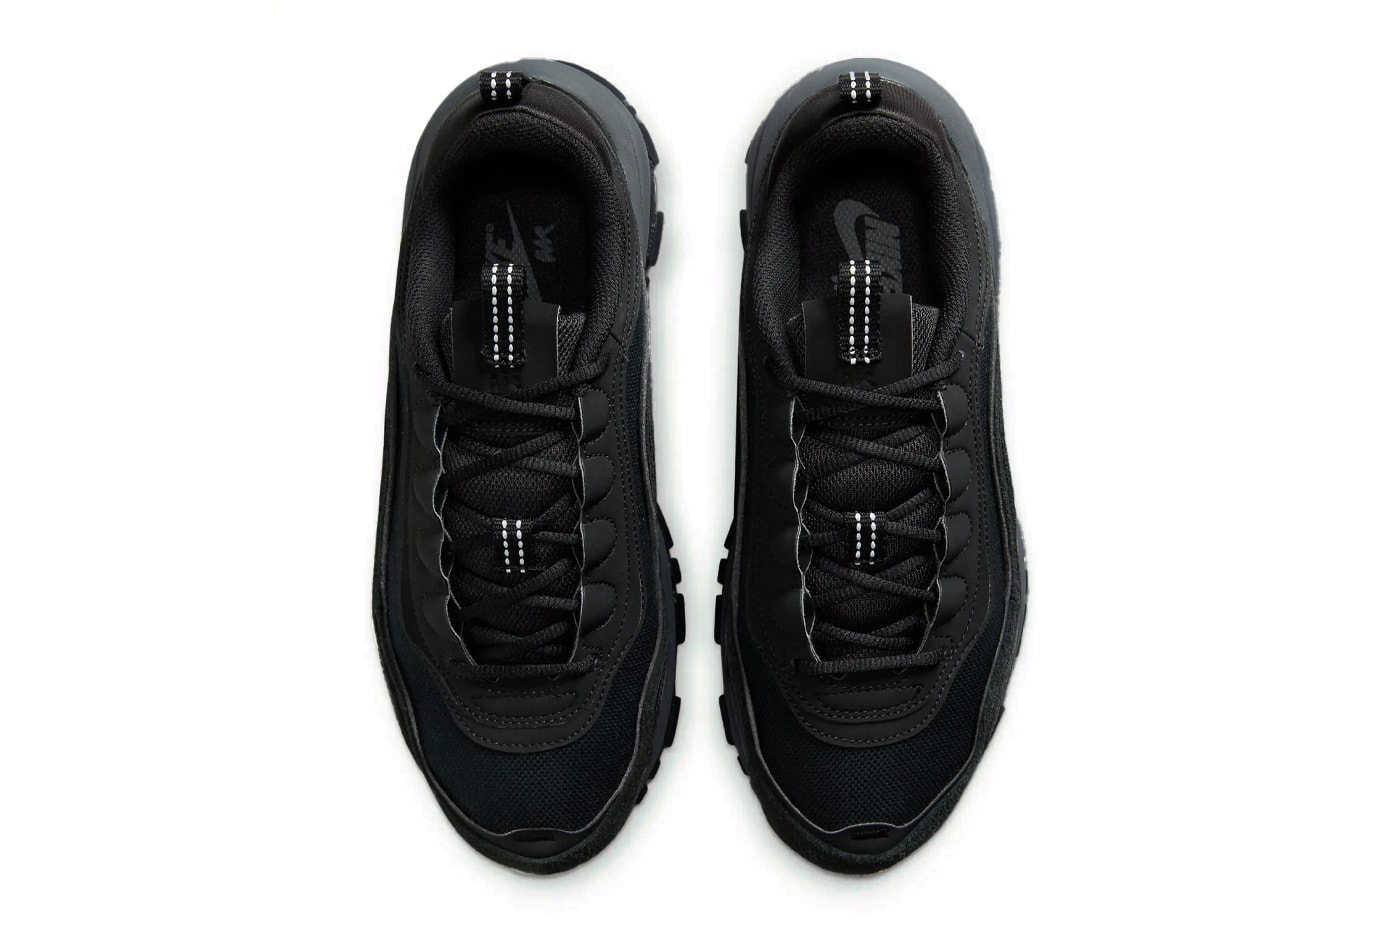 ナイキエアマックス 97 フューチュラにオールブラックの新作 “トリプルブラック” が登場 Nike Air Max 97 Futura Surfaces in Stealthy "Triple Black" FB4496-002 release info swoosh sneakers oversized technical dad shoes subtle all black